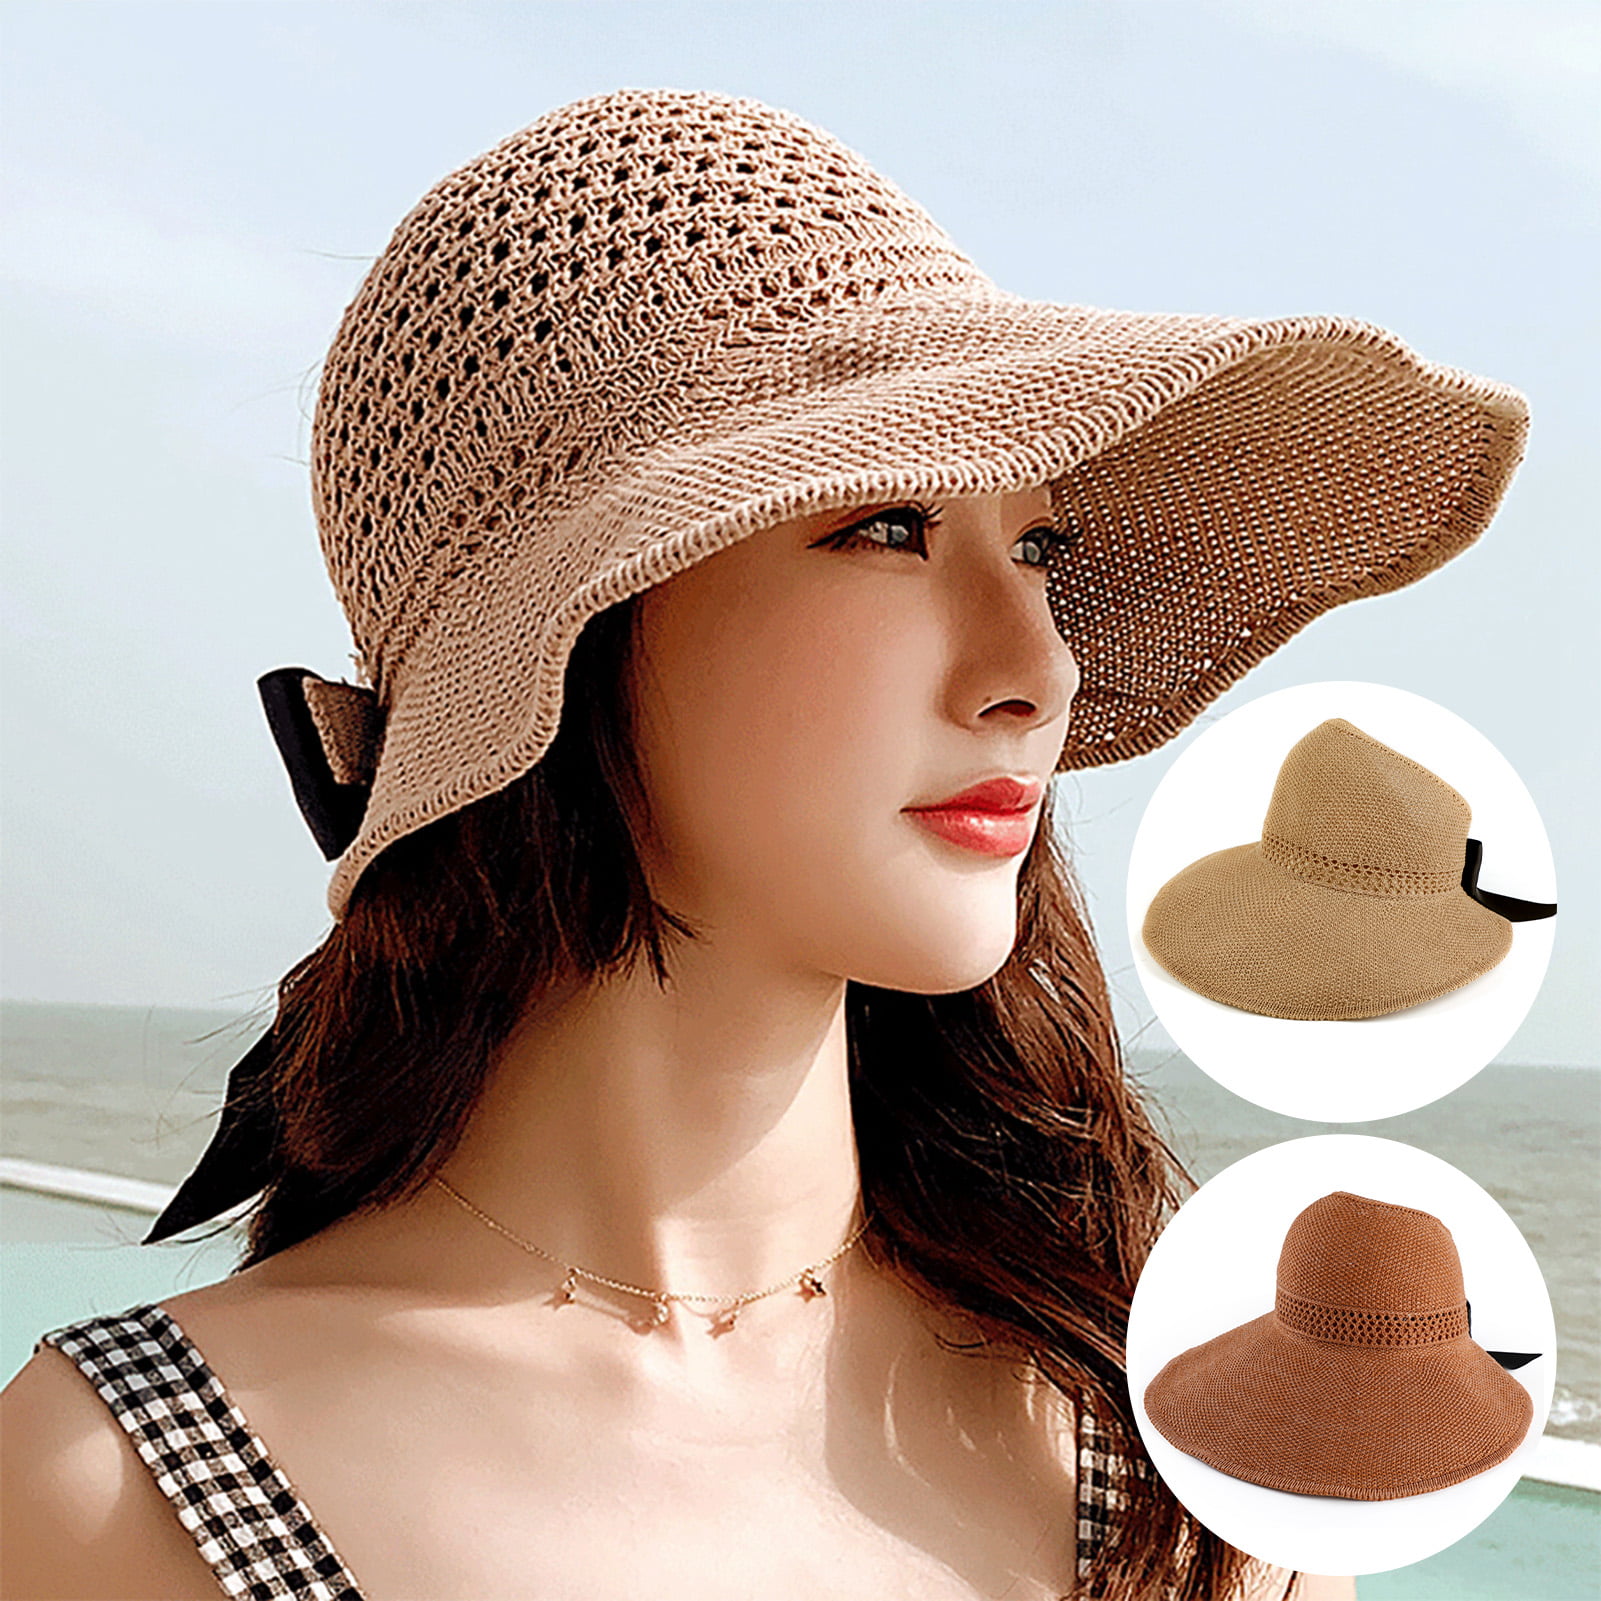 Flower Beach Straw Hat Women Summer Sun Hats Wide Brim Travel Sunhat Sunscreen Breathable Folding Cap